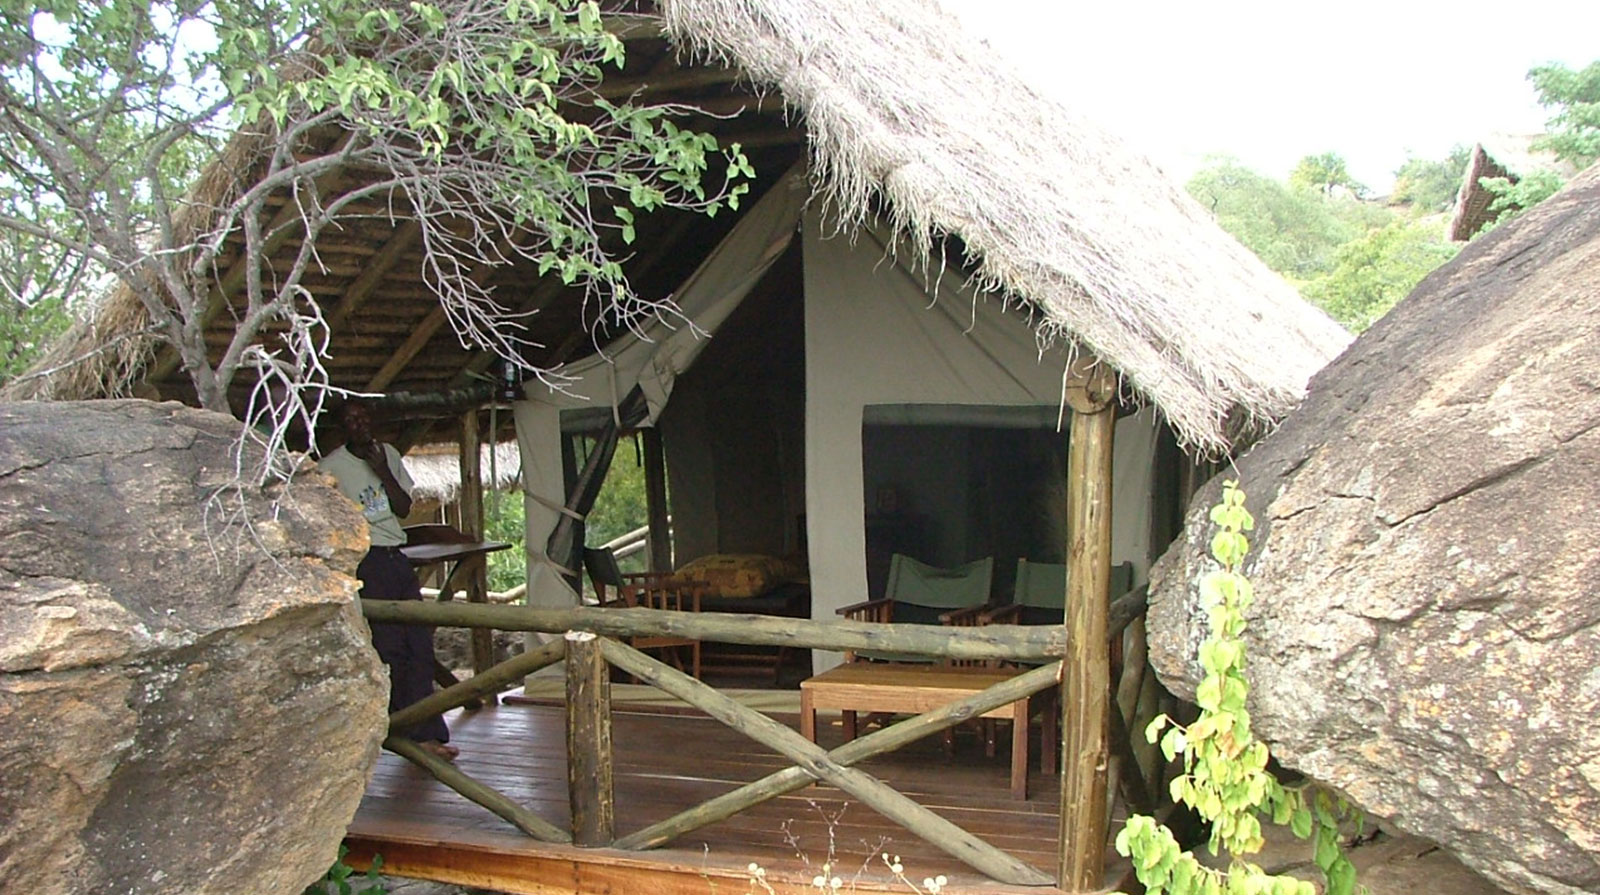 Maweninga Camp - Simple mais élégant
